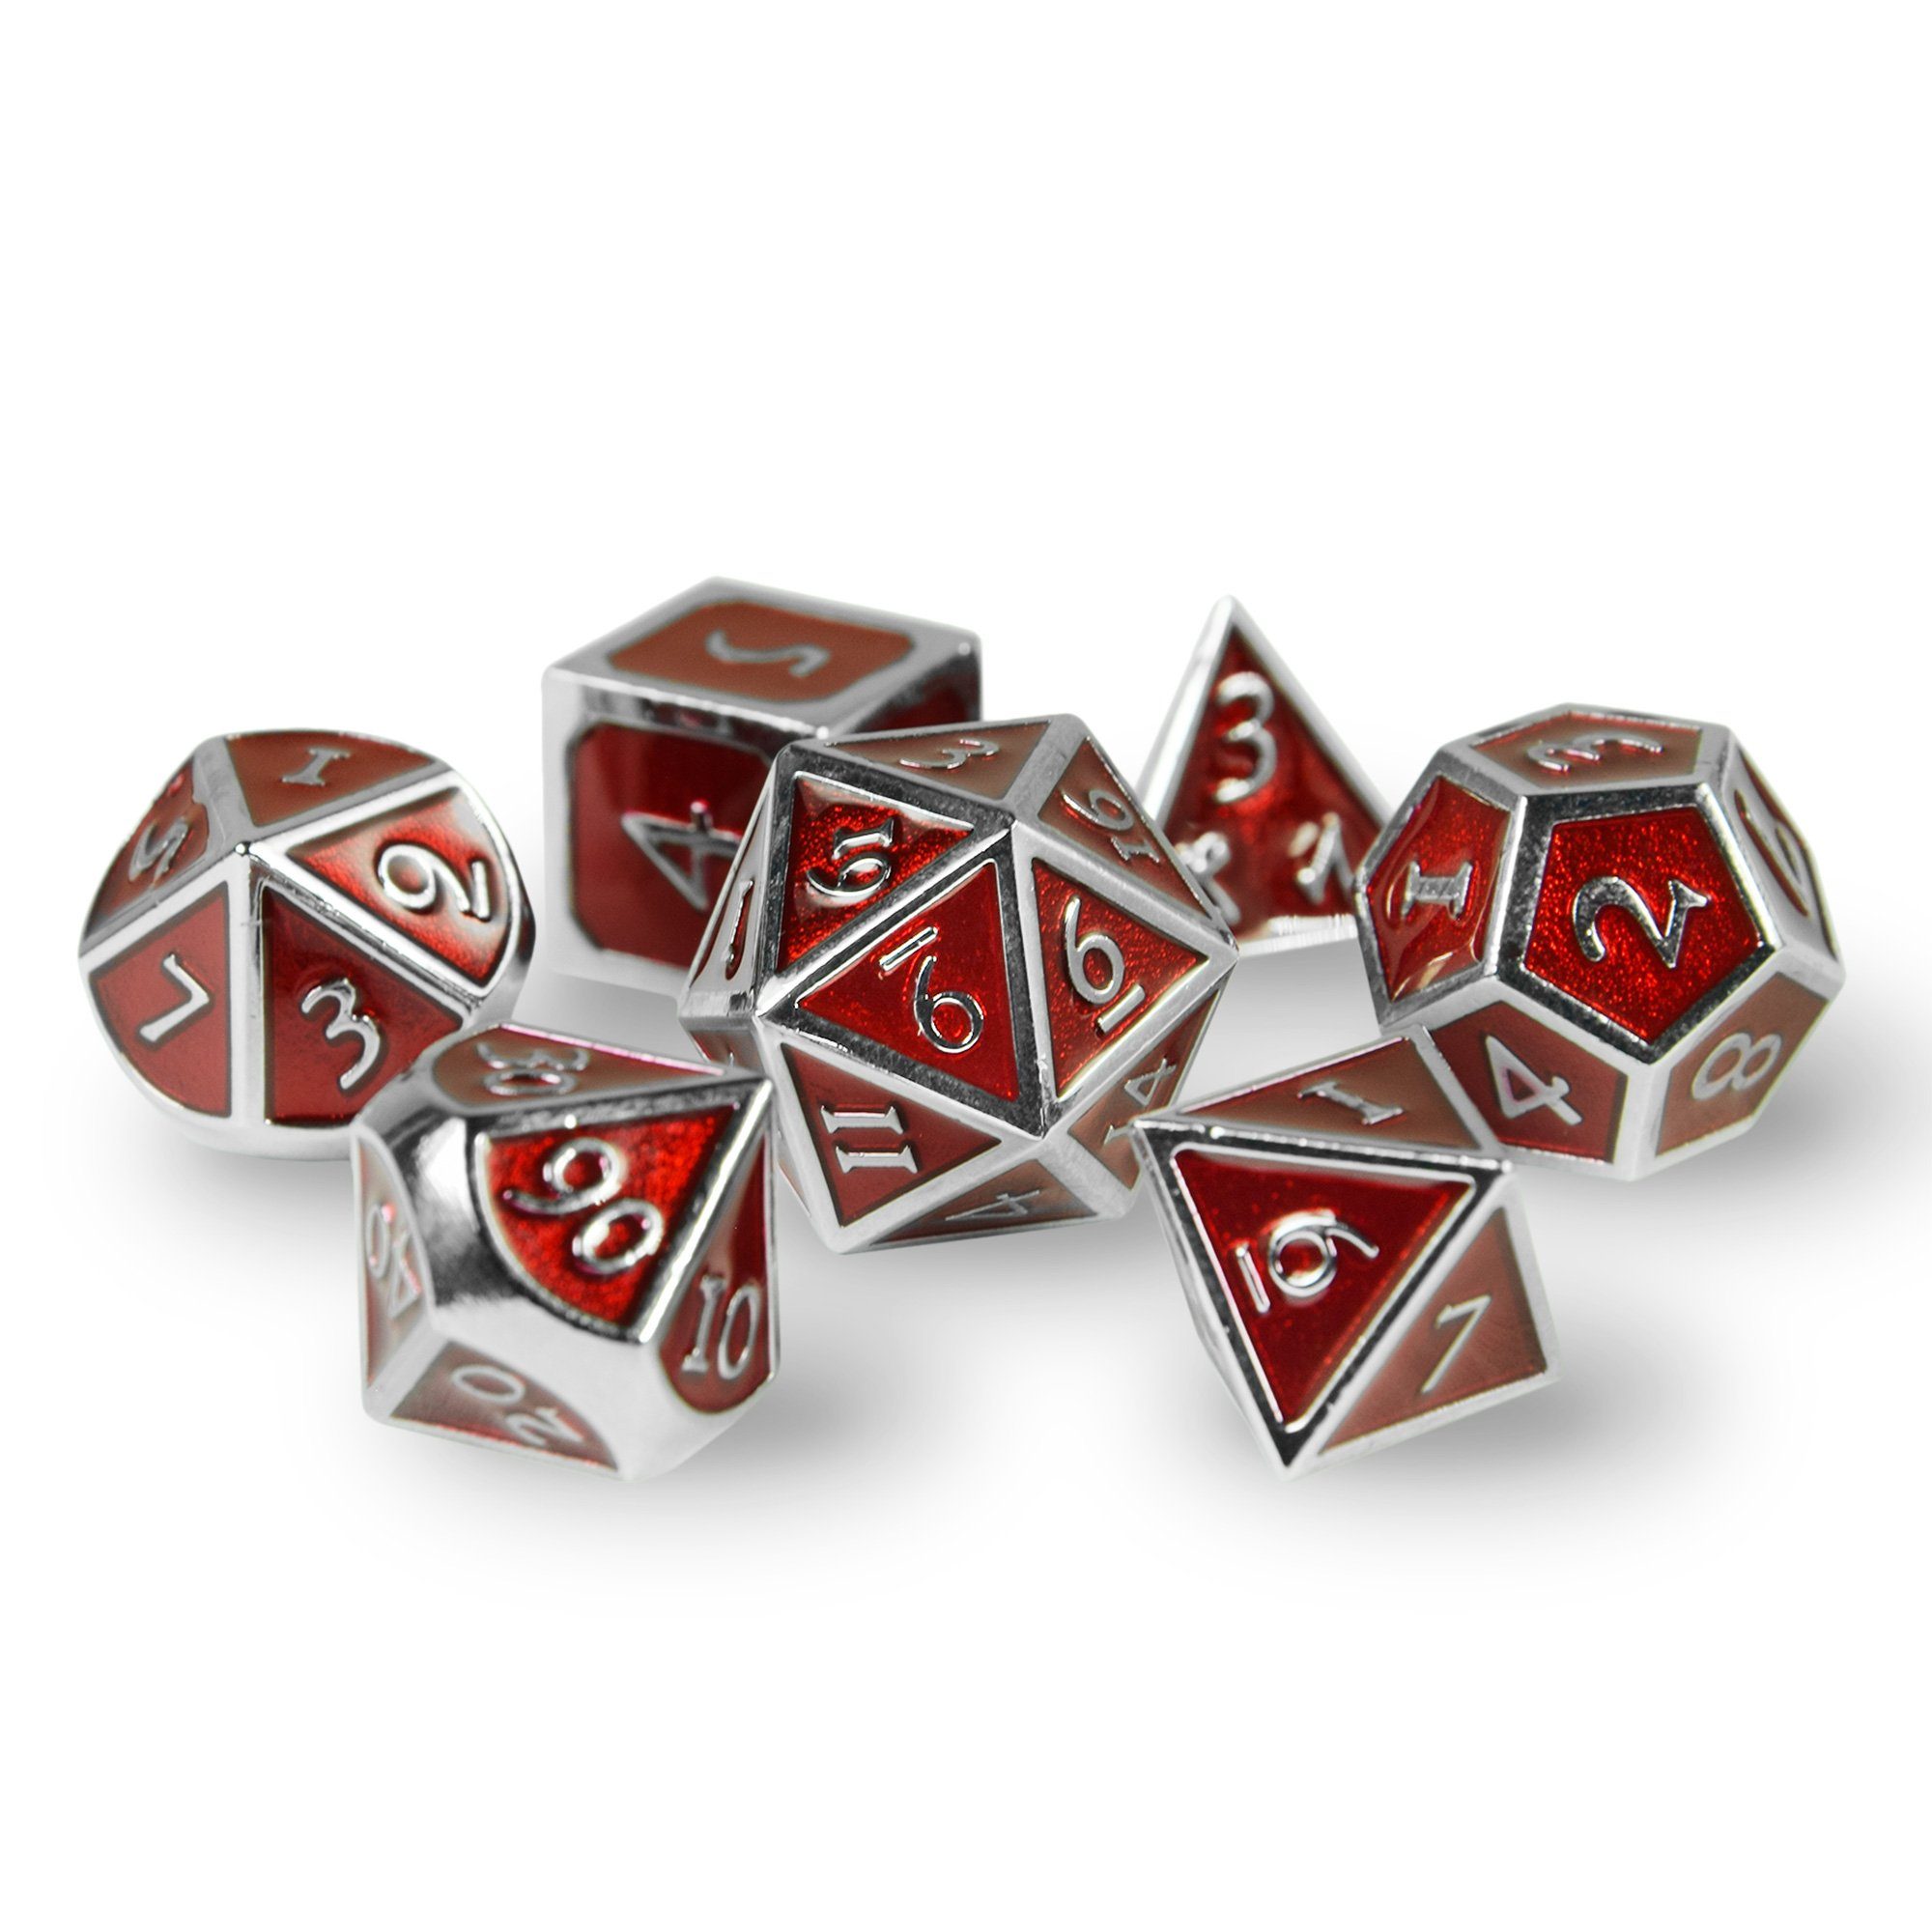 SHIBBY Spielesammlung, 7 polyedrische in Metall-DND-Würfel Silber/Rot Steampunk inkl. Optik, Aufbewahrungsbox